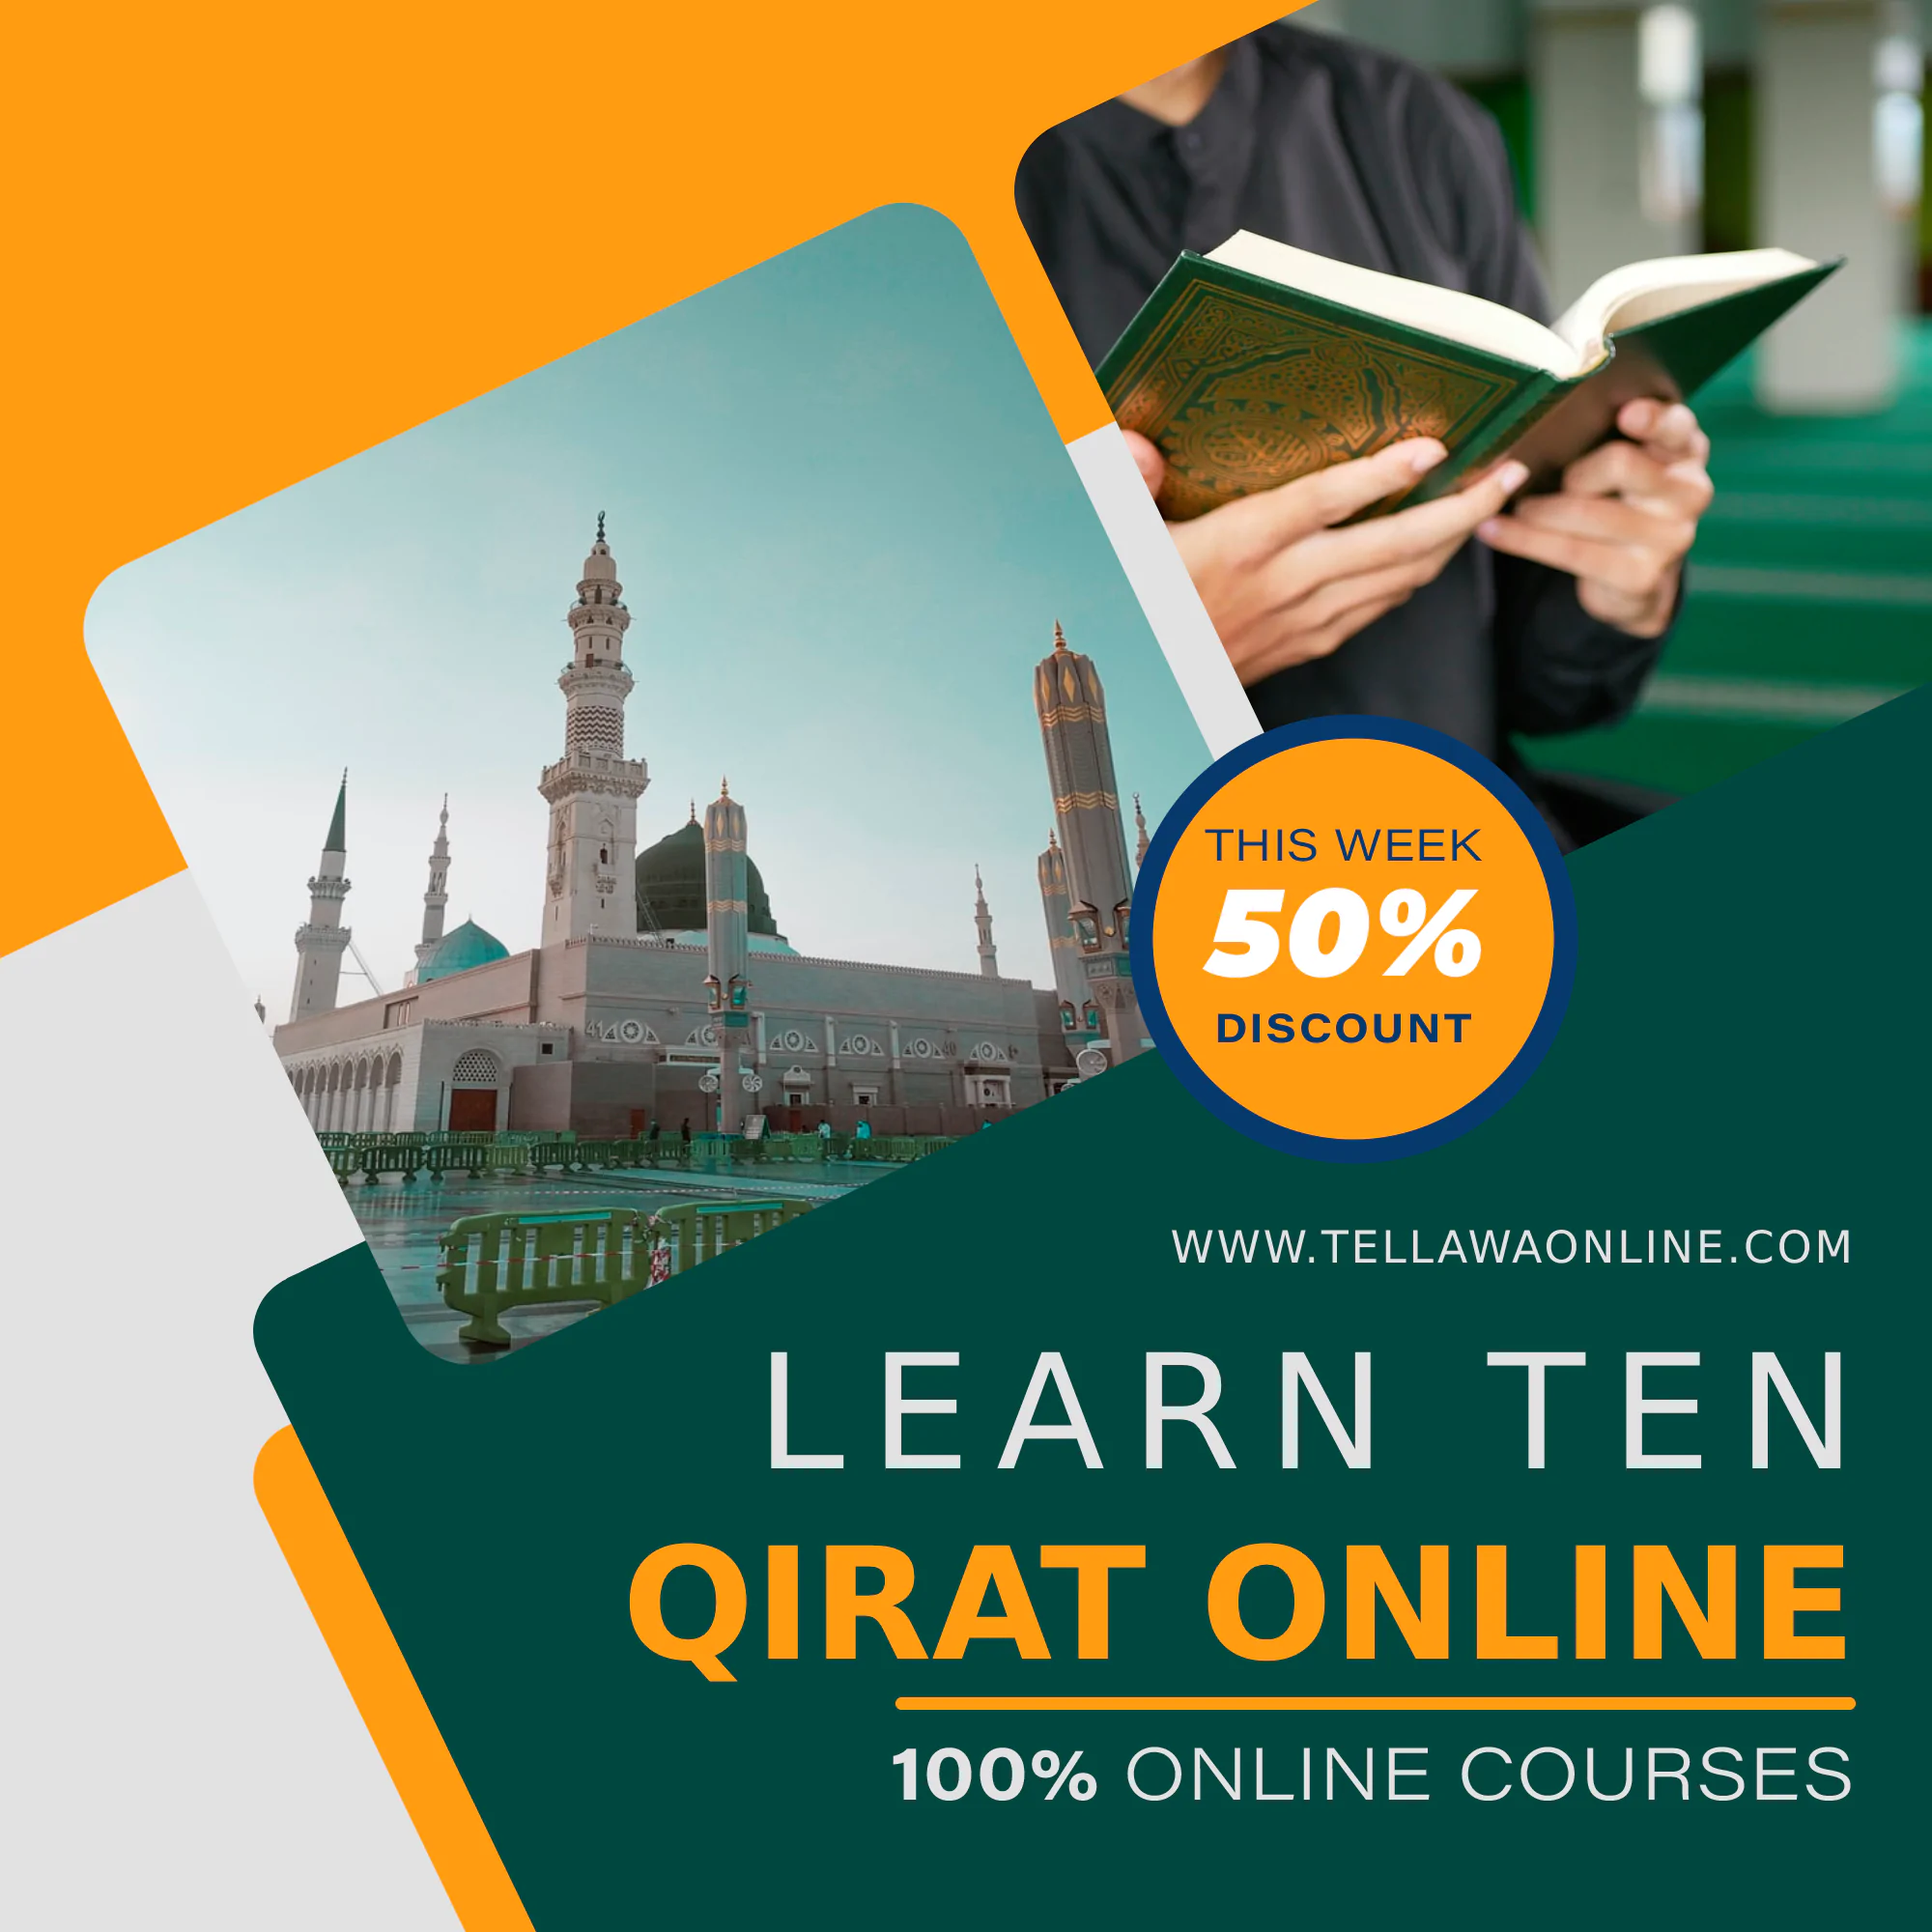 Learn Ten Qirat Online